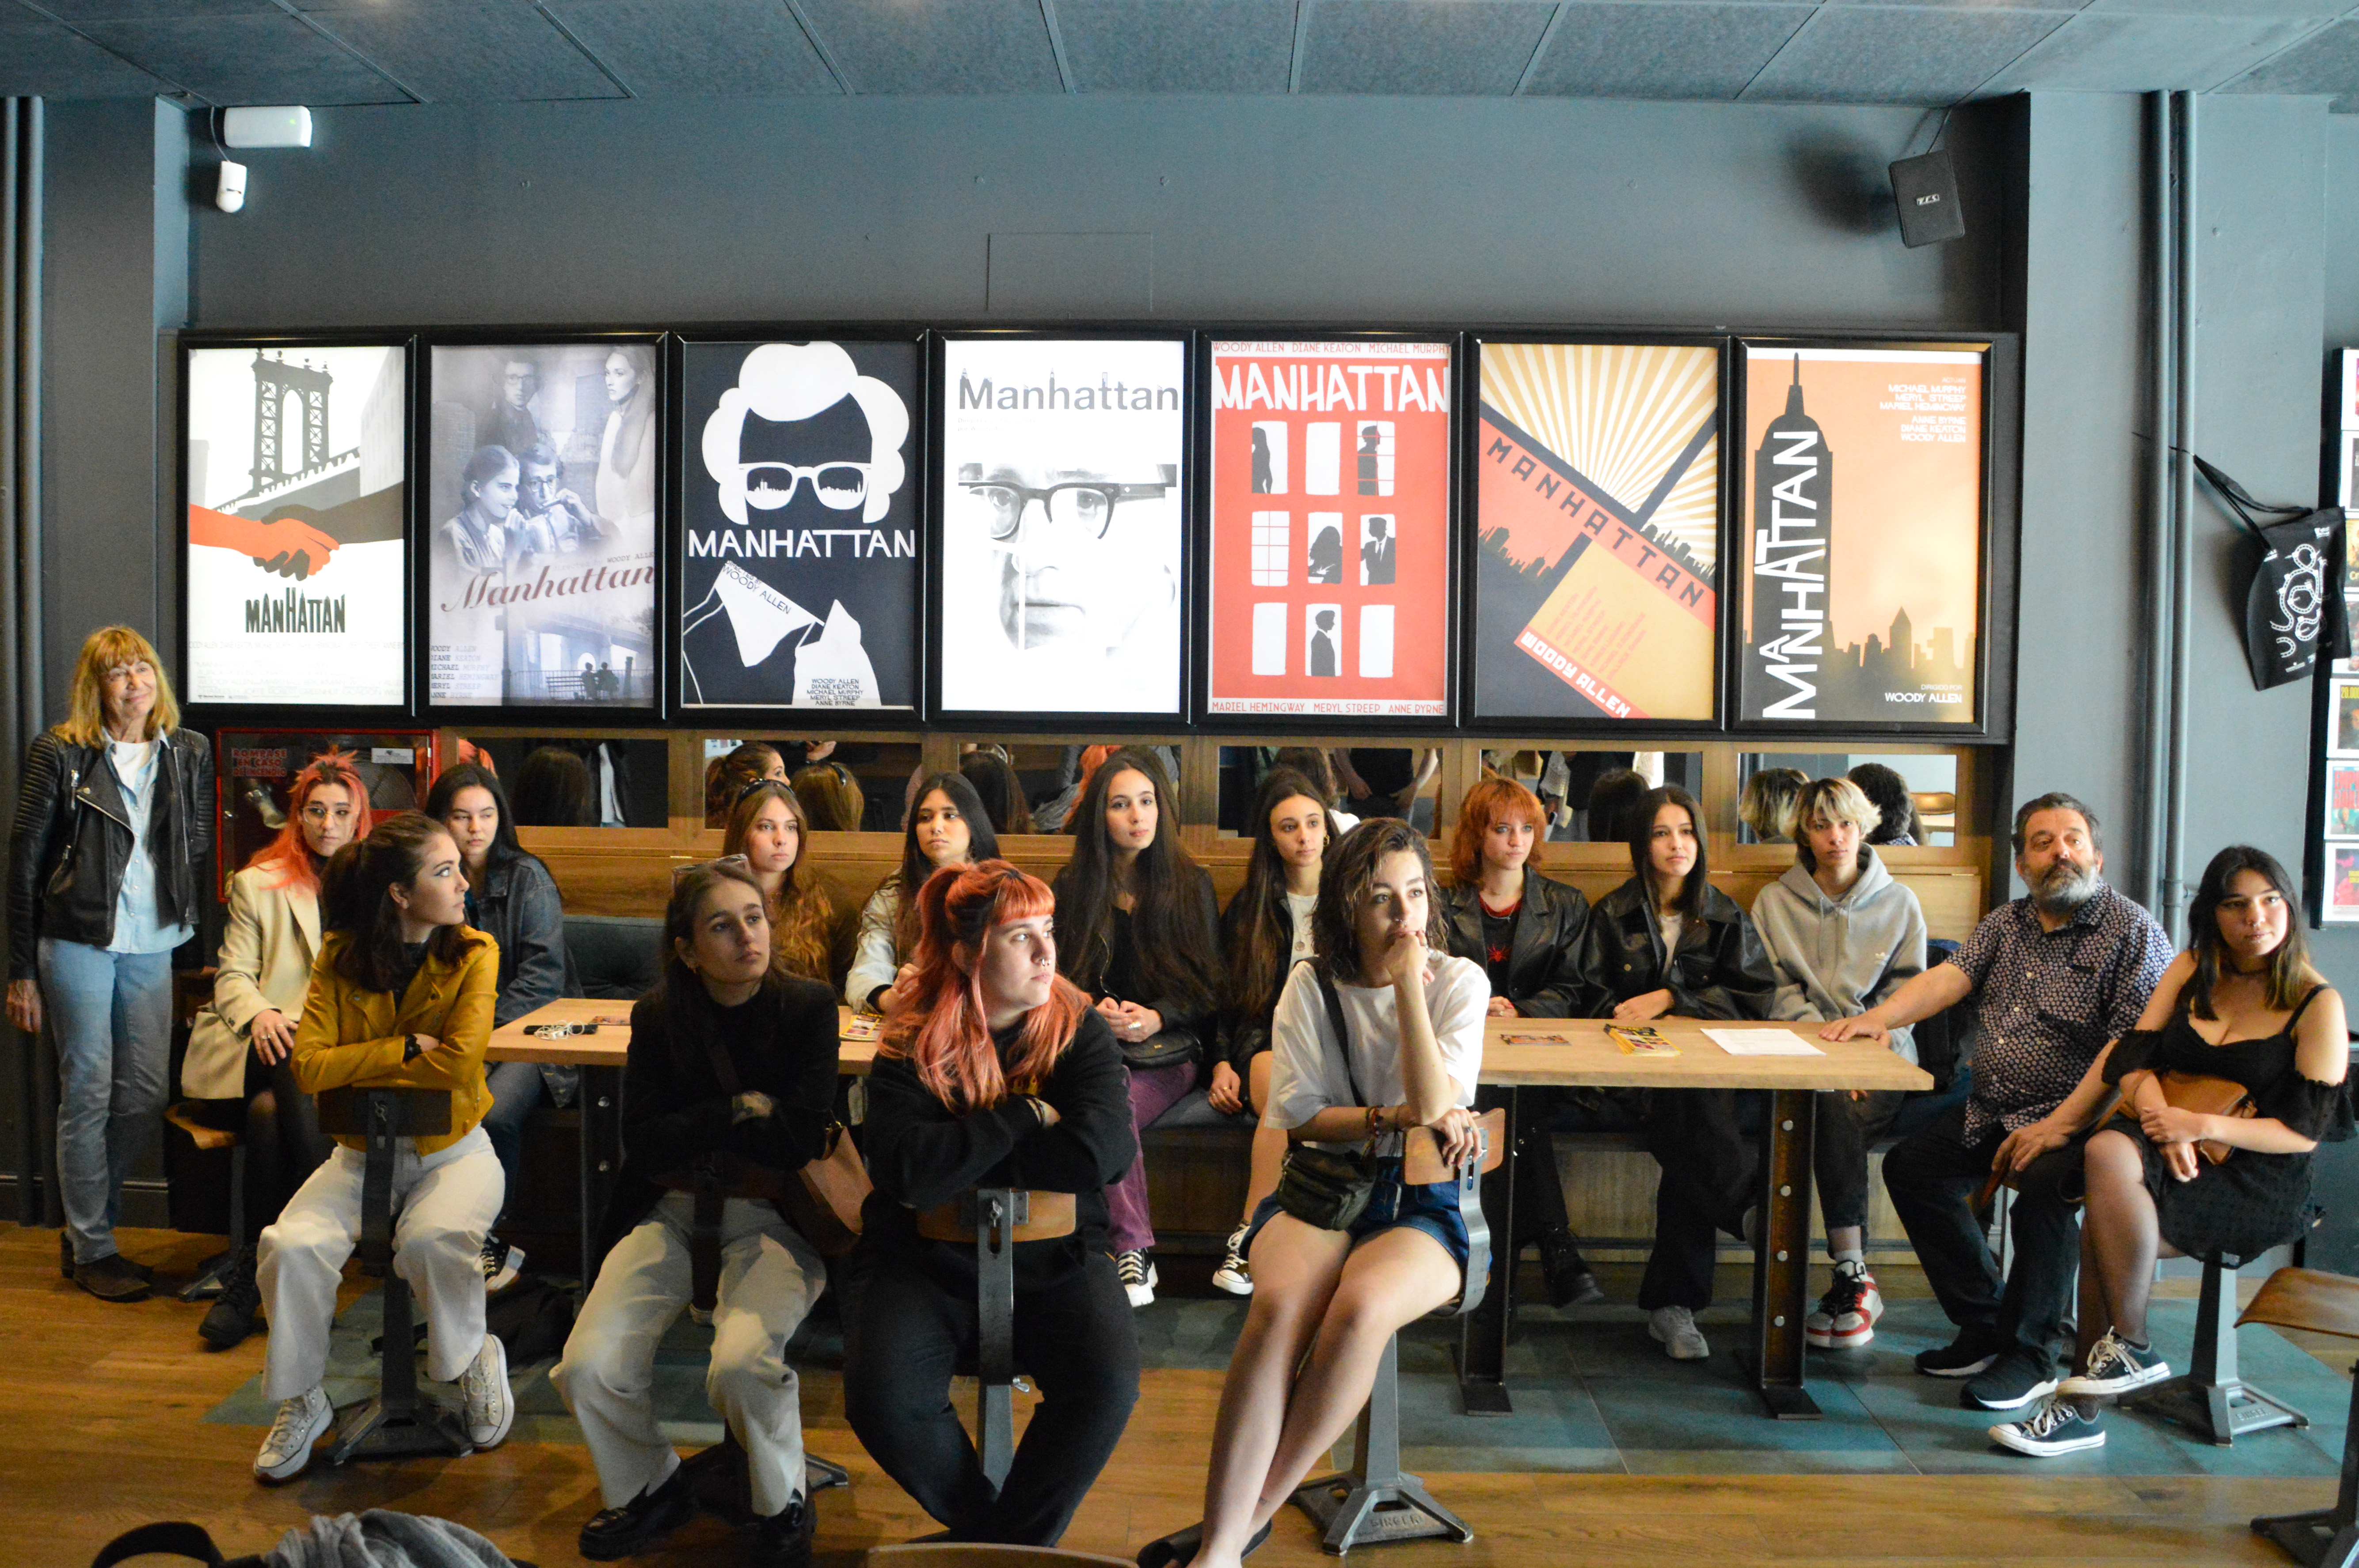 Estudiantes de Bellas Artes recrean una exposición con carteles inspirados en películas ‘La Luna’ y ‘Manhattan’